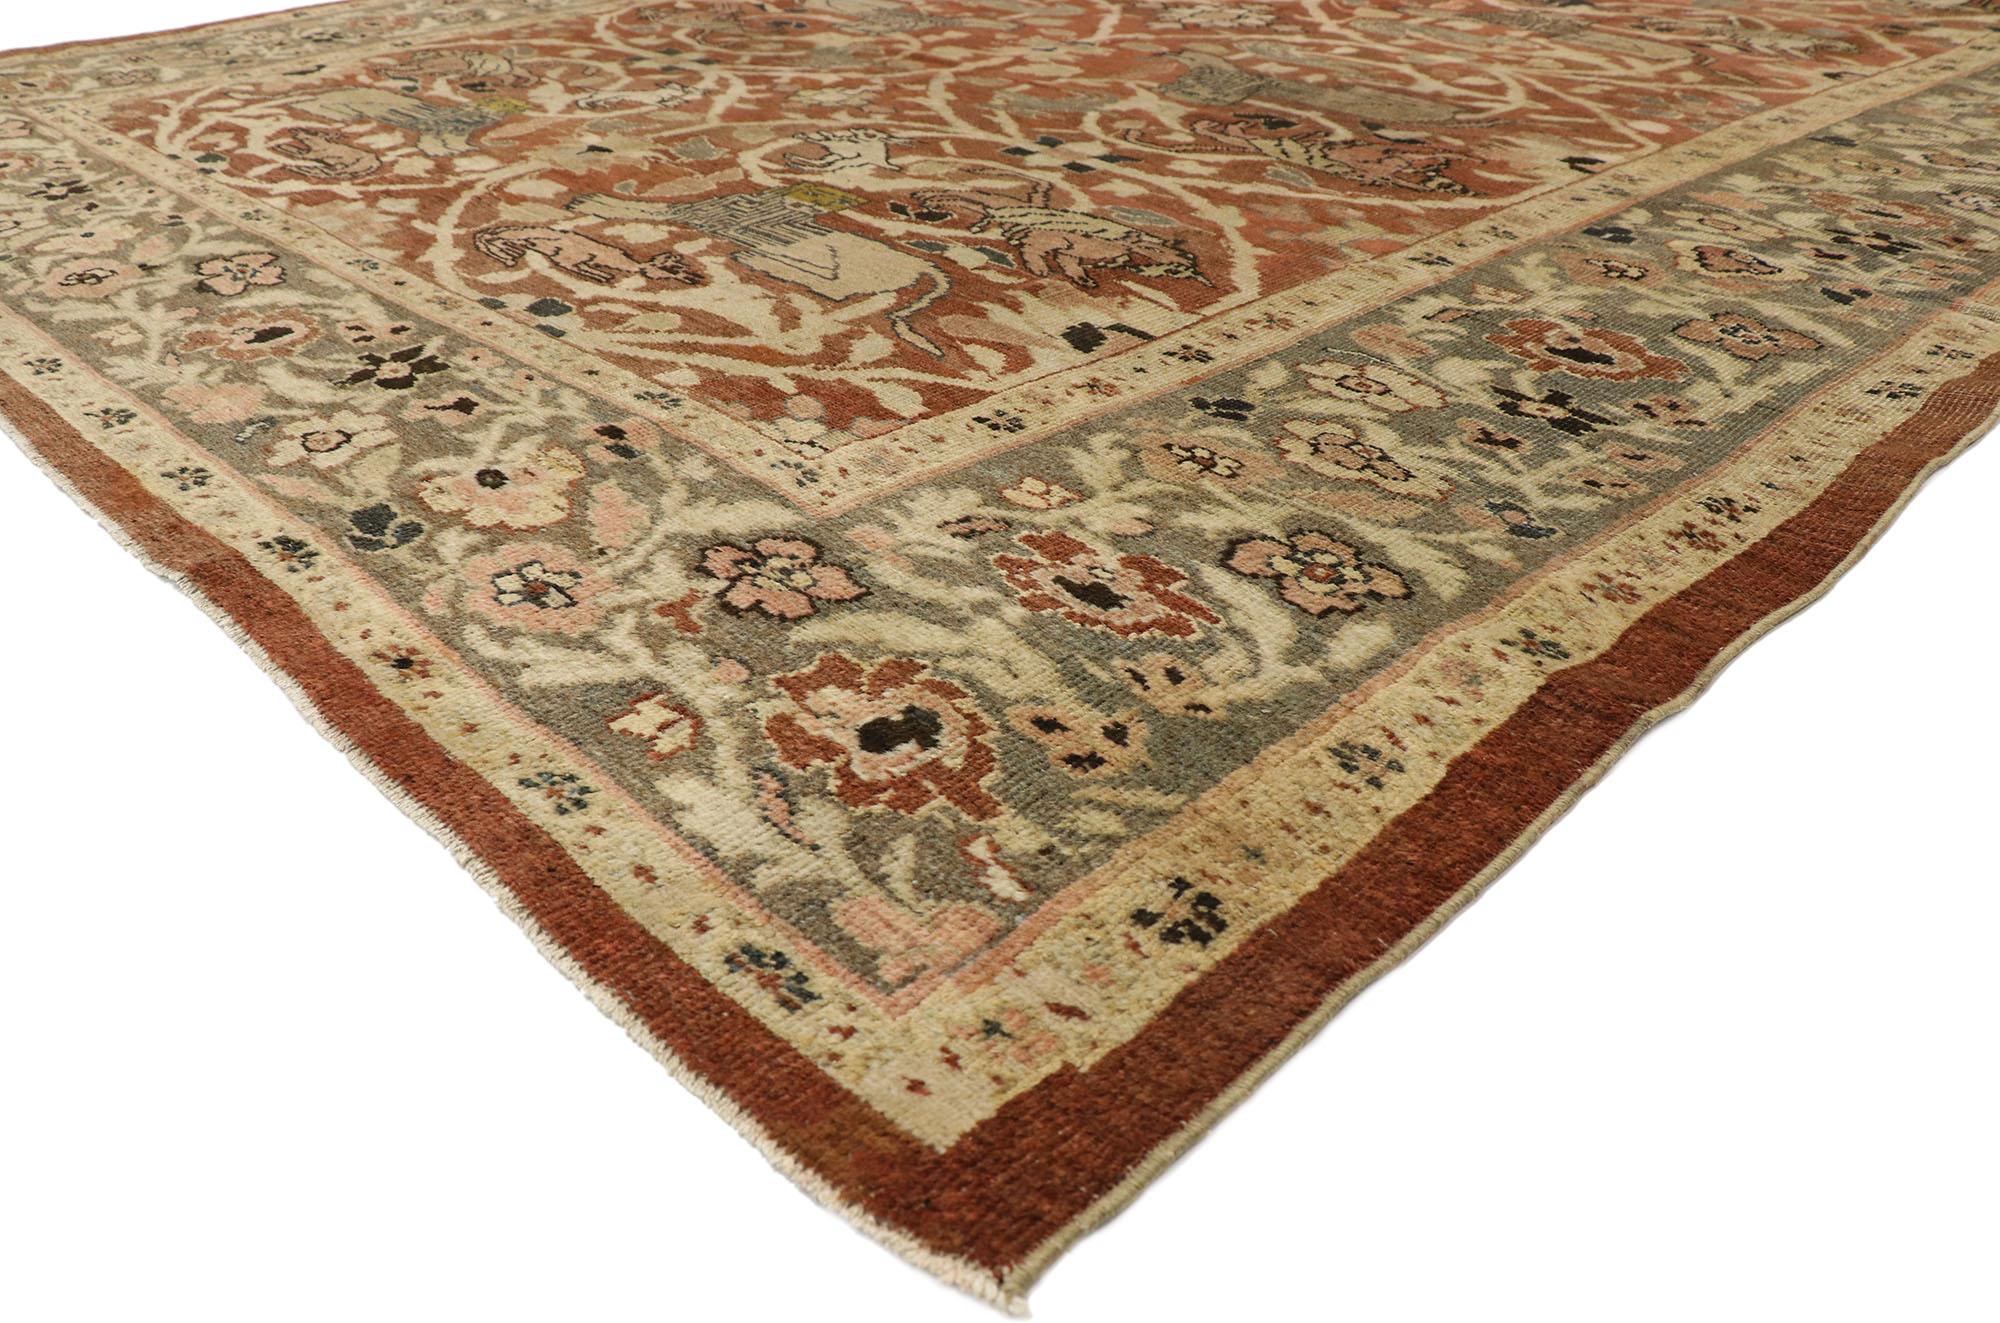 74840 antique tapis persan Sultanabad avec scène de chasse et style Arts & Crafts. Les éléments architecturaux des formes naturalistes combinés au style Arts & Crafts, ce tapis persan ancien Sultanabad en laine noué à la main étonne par sa beauté.